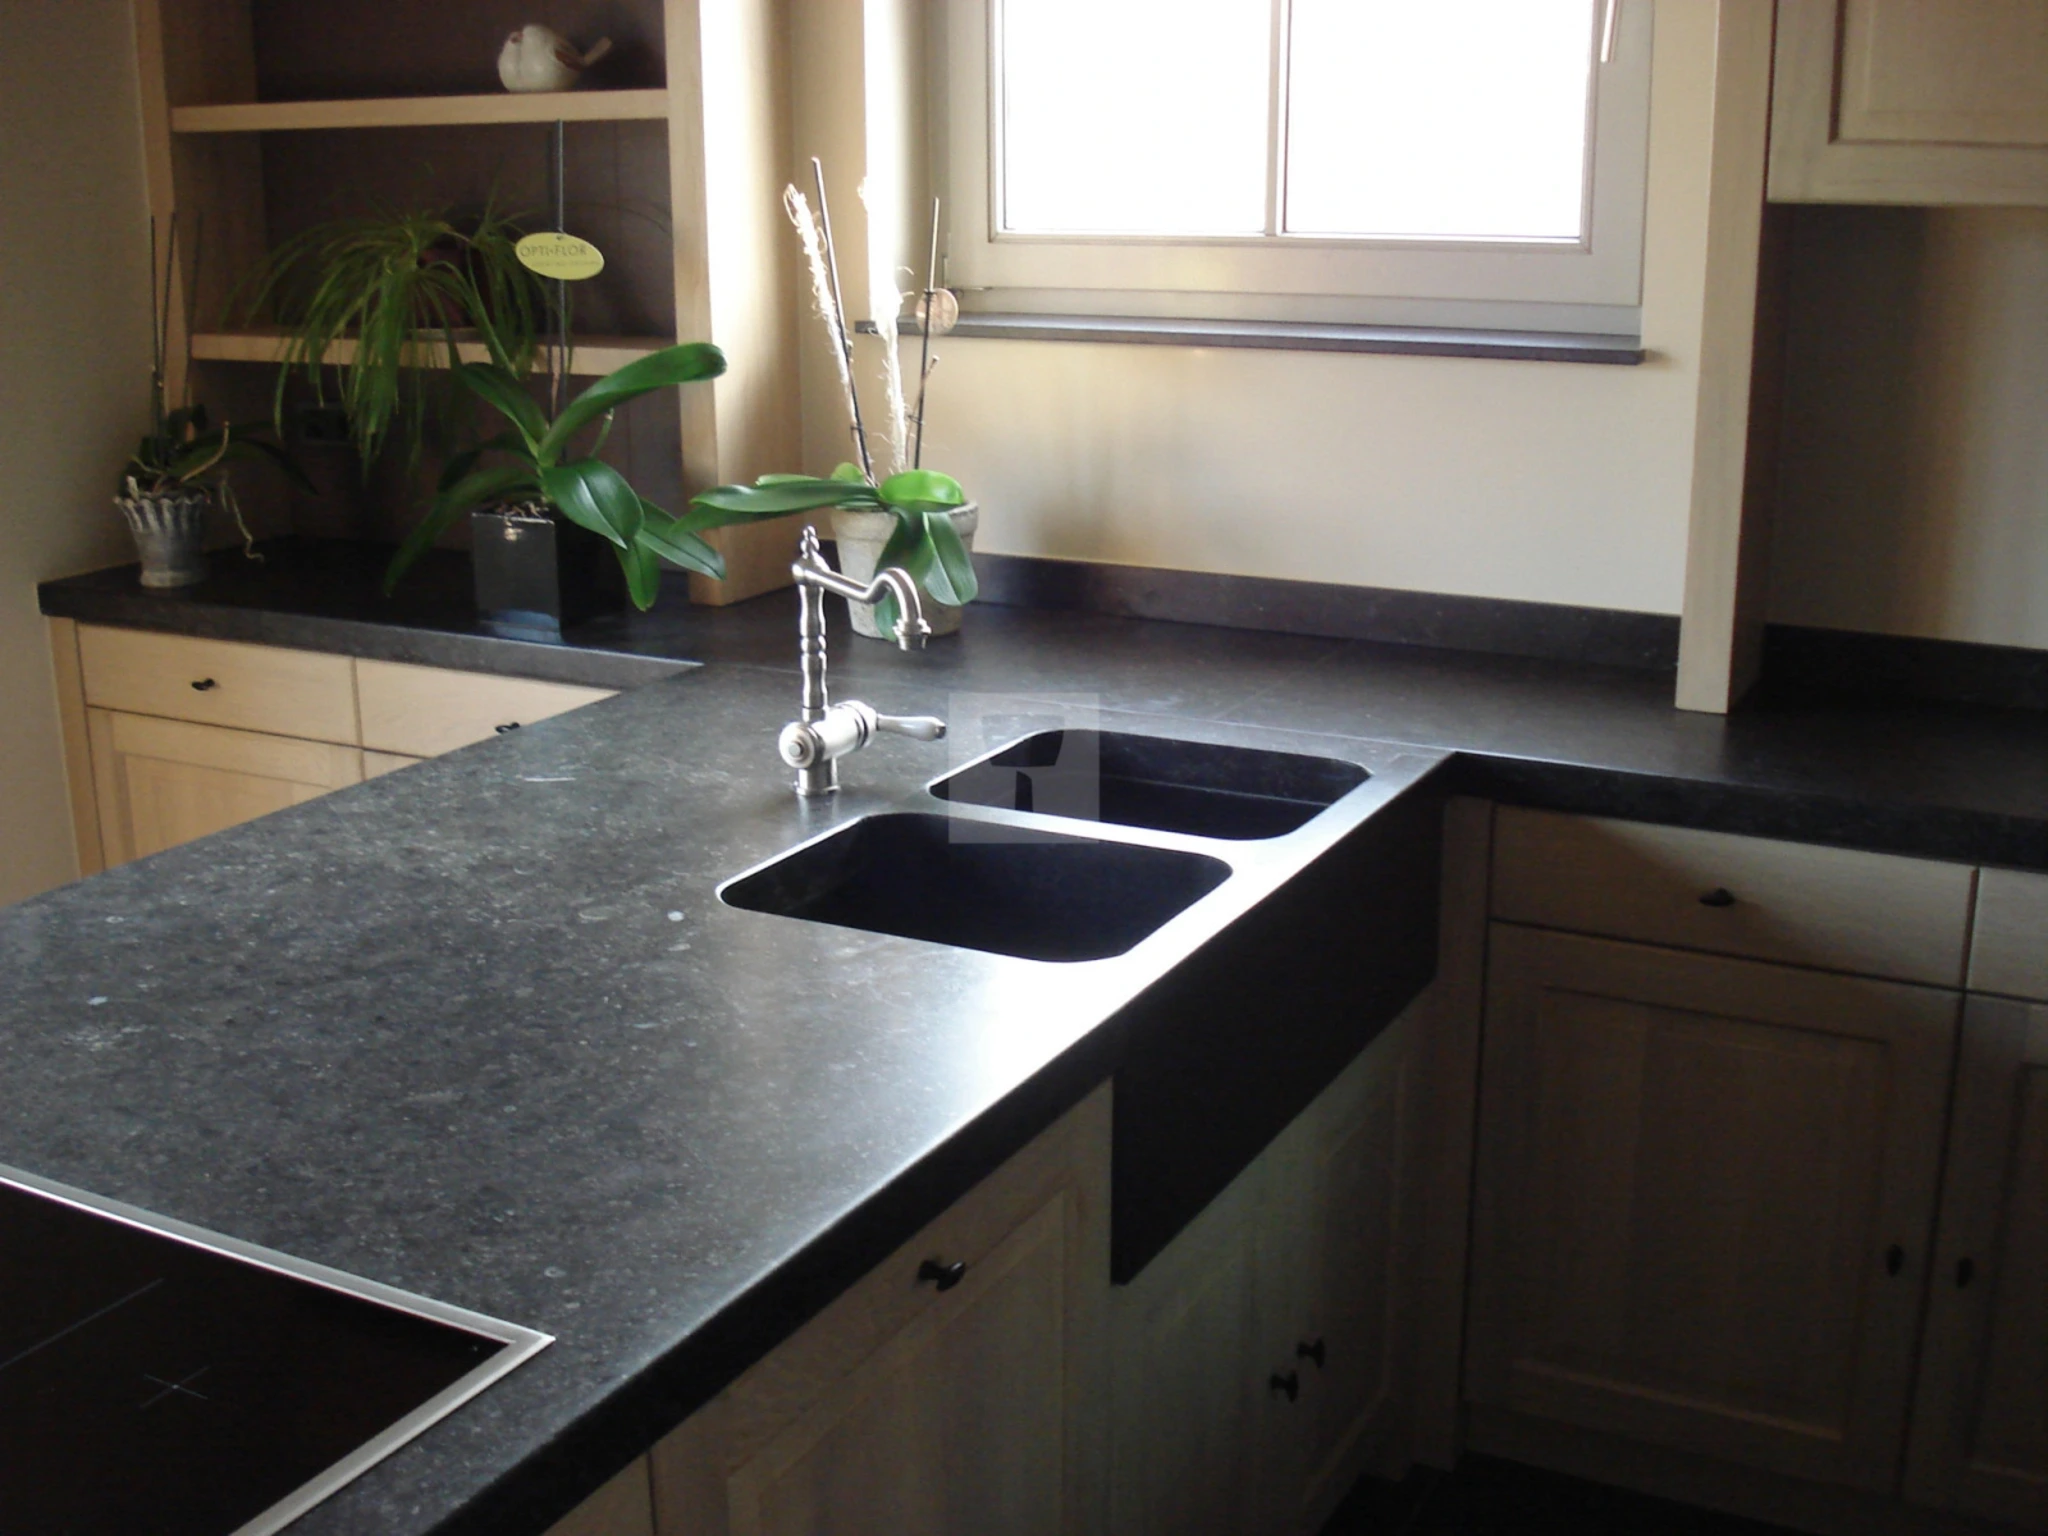 Bluestone worktop and sink kitchen